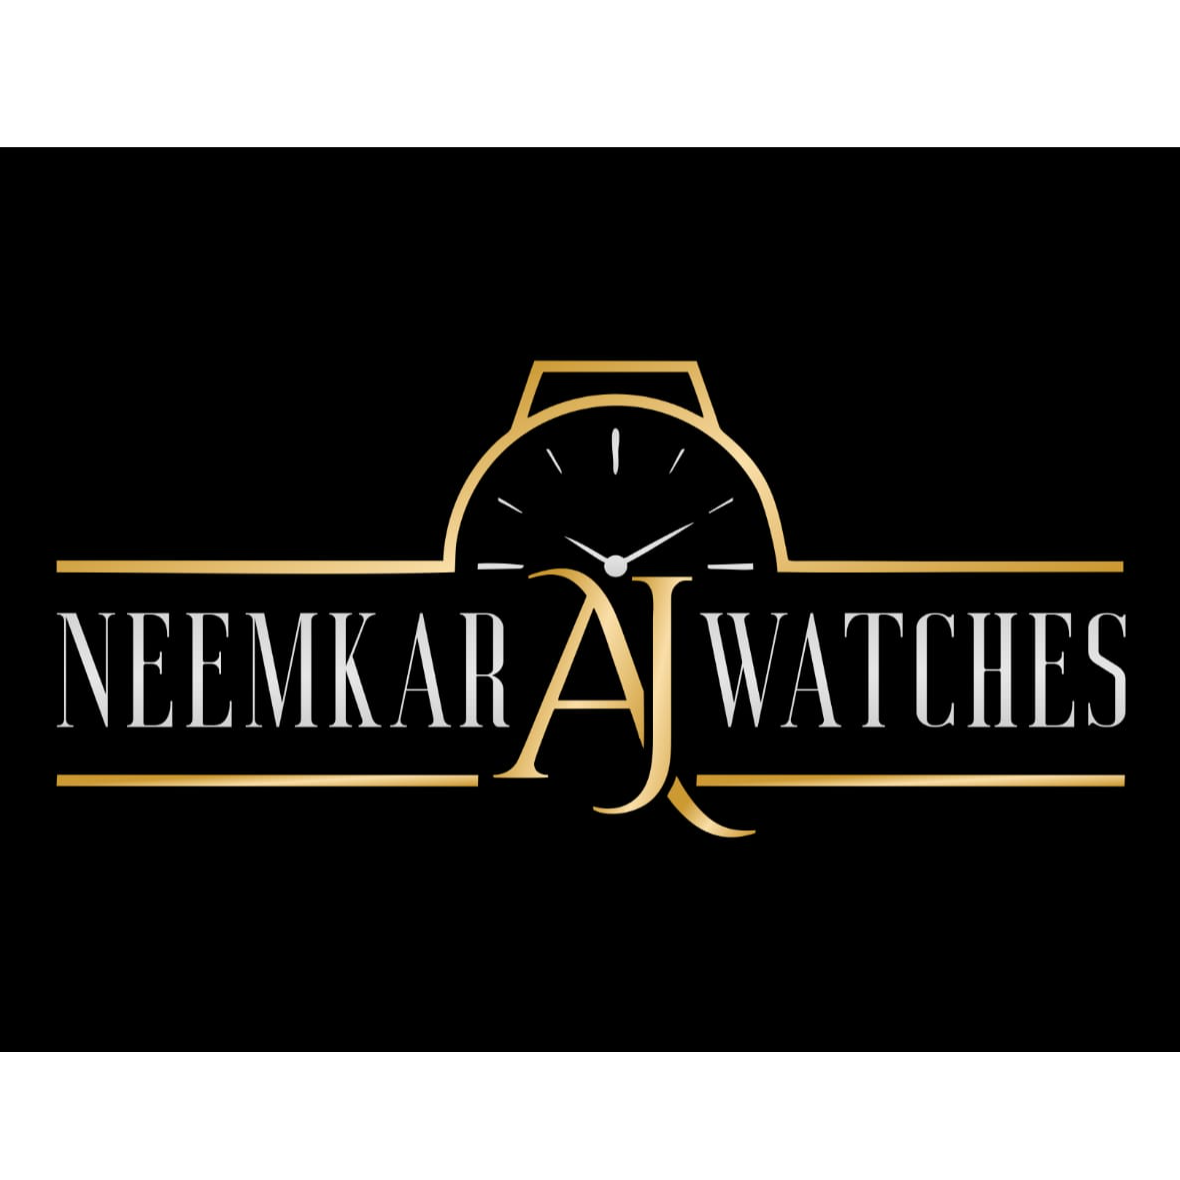 www.neemkarwatches.com